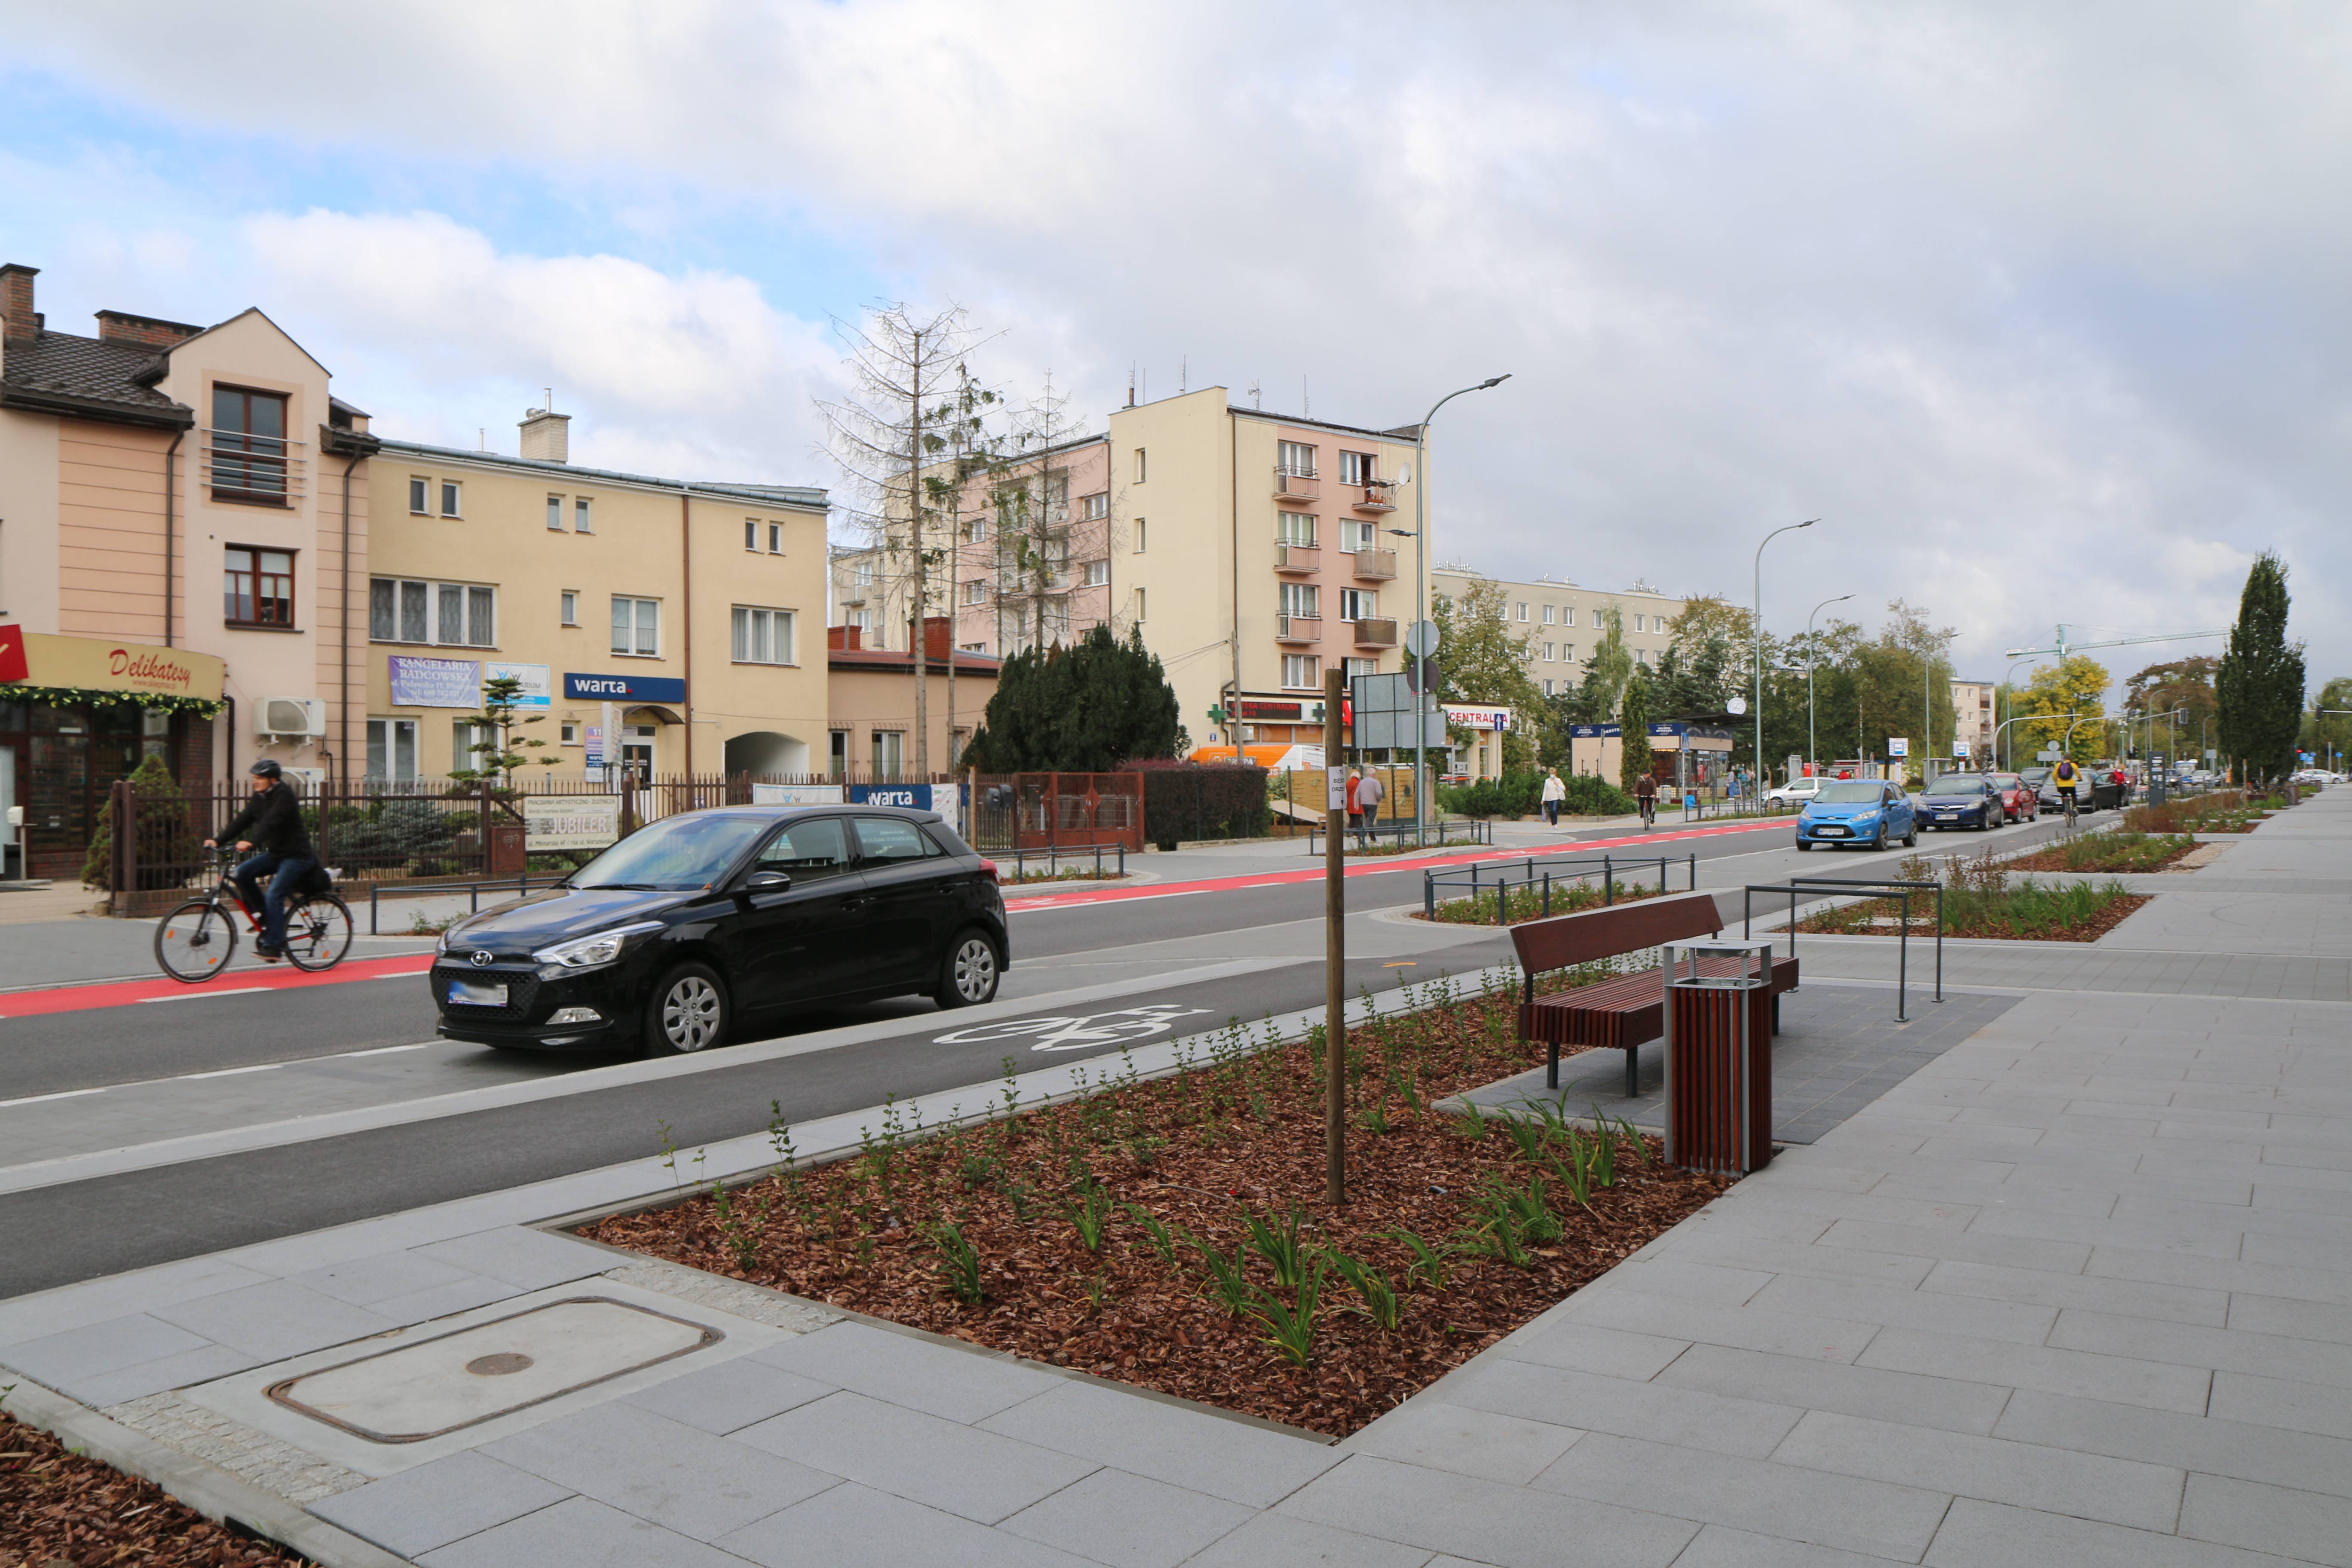 Patrzymy w przyszłość – zmieniamy centrum miasta. Na zdjęciu ulica Puławska po modernizacji.